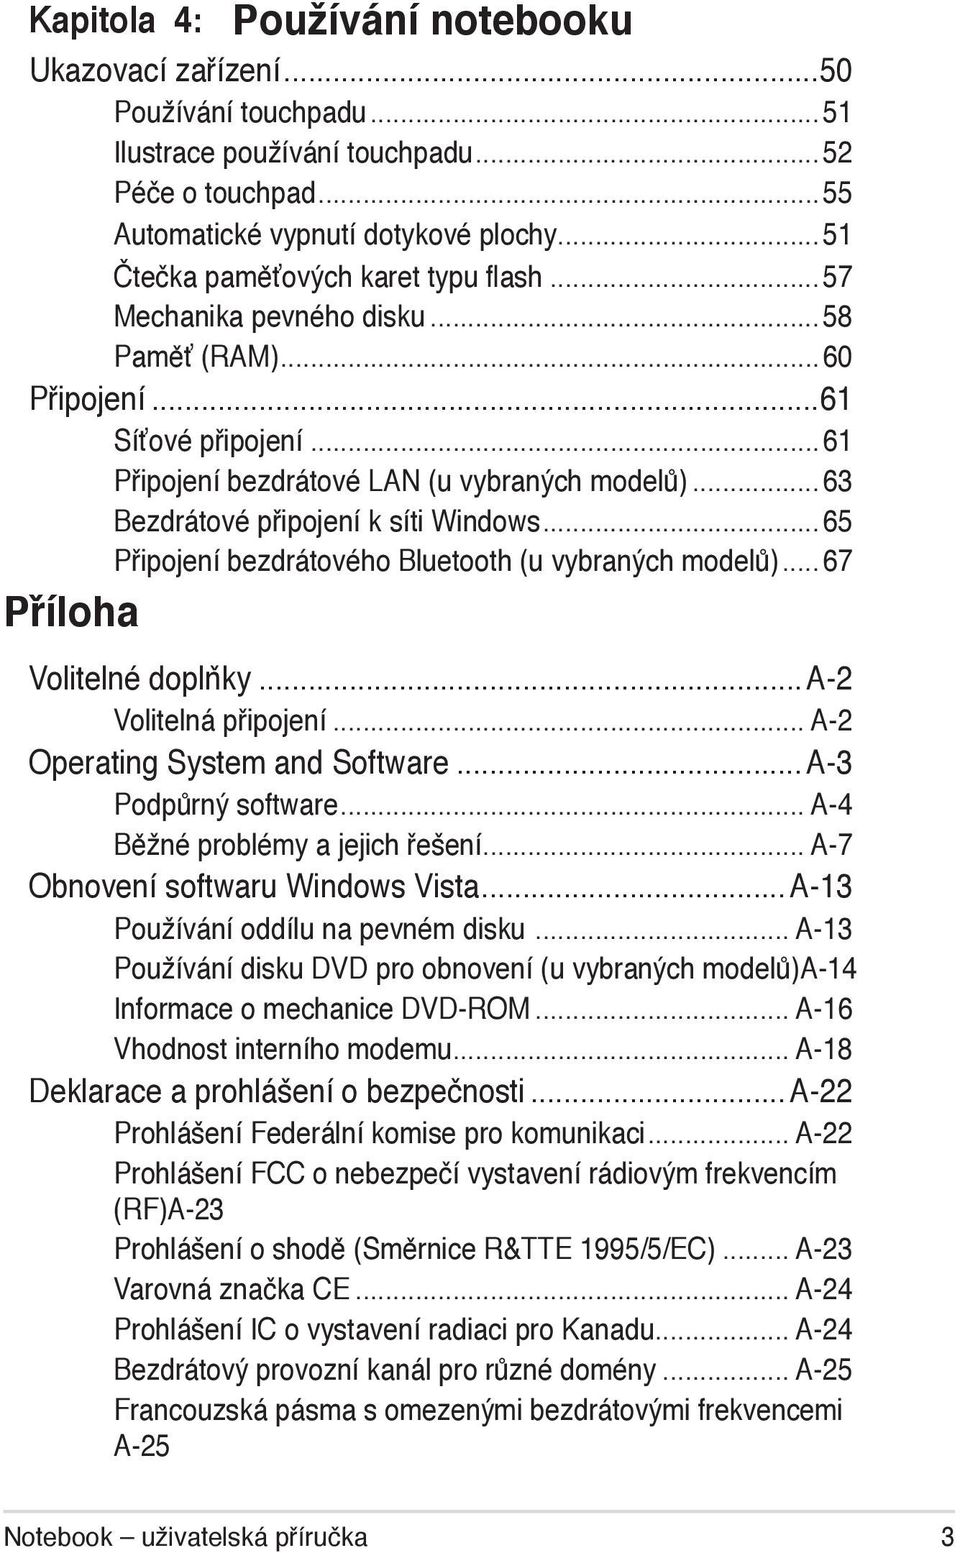 ..63 Bezdrátové připojení k síti Windows...65 Připojení bezdrátového Bluetooth (u vybraných modelů)... 67 Příloha Volitelné doplňky...a-2 Volitelná připojení... A-2 Operating System and Software.